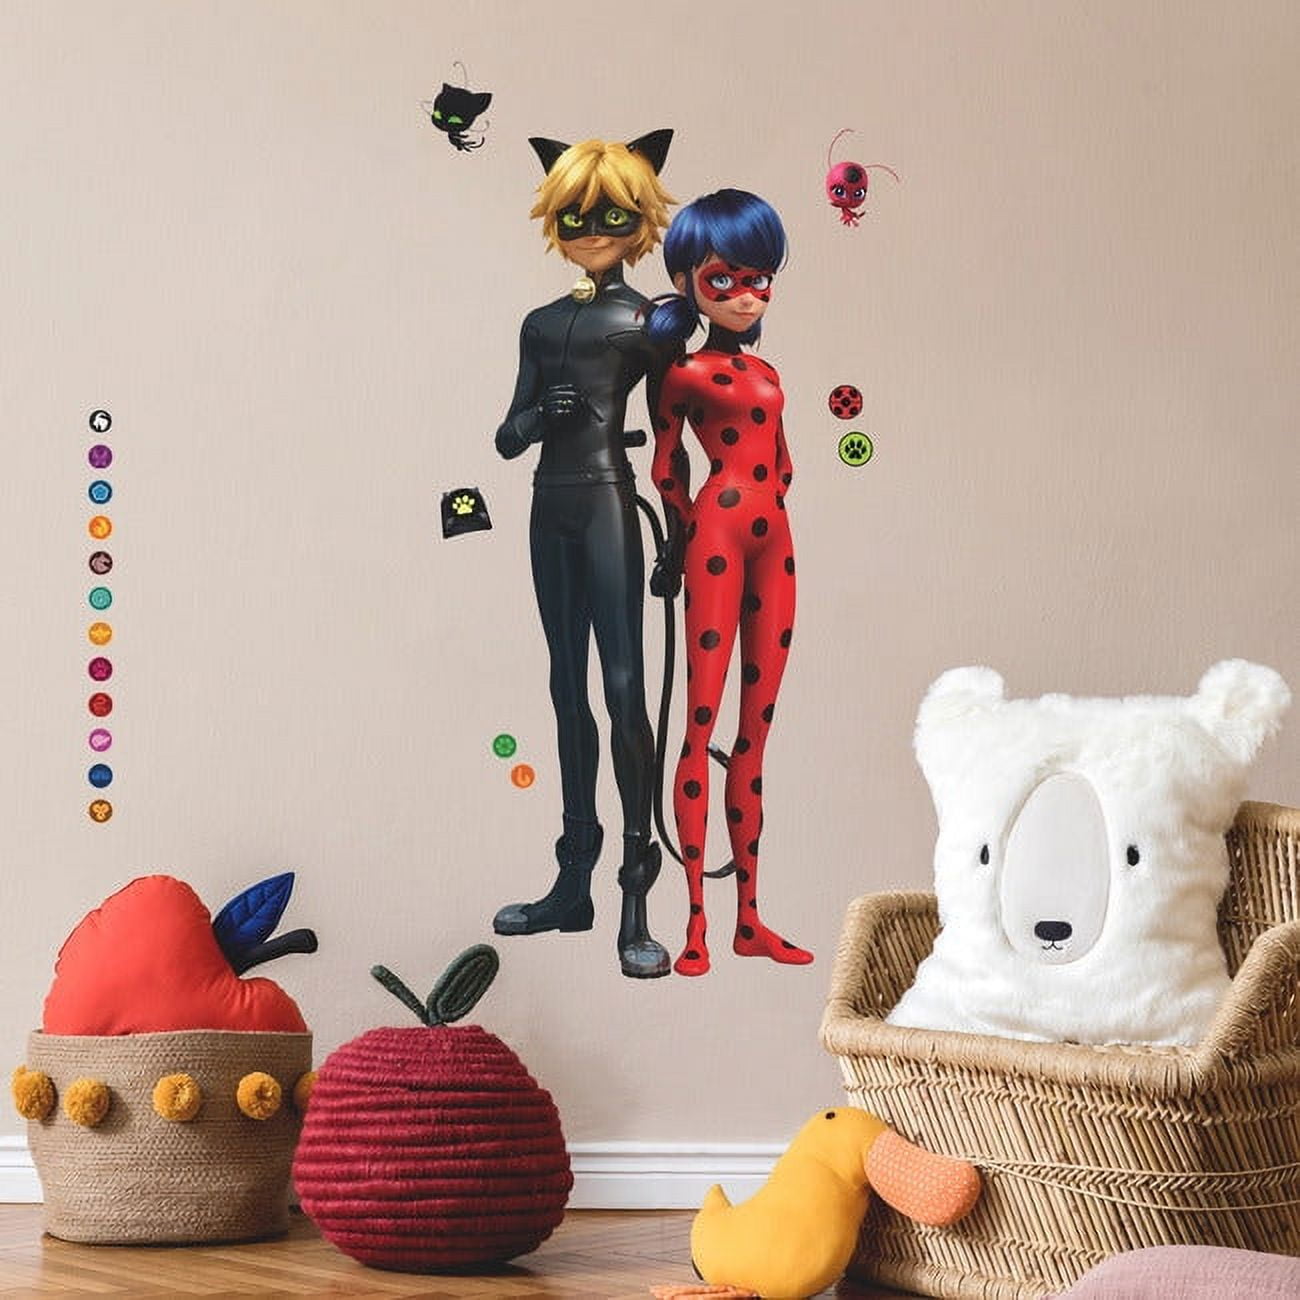 23 Miraculous Ladybug & Cat Noir Images, Stock Photos, 3D objects